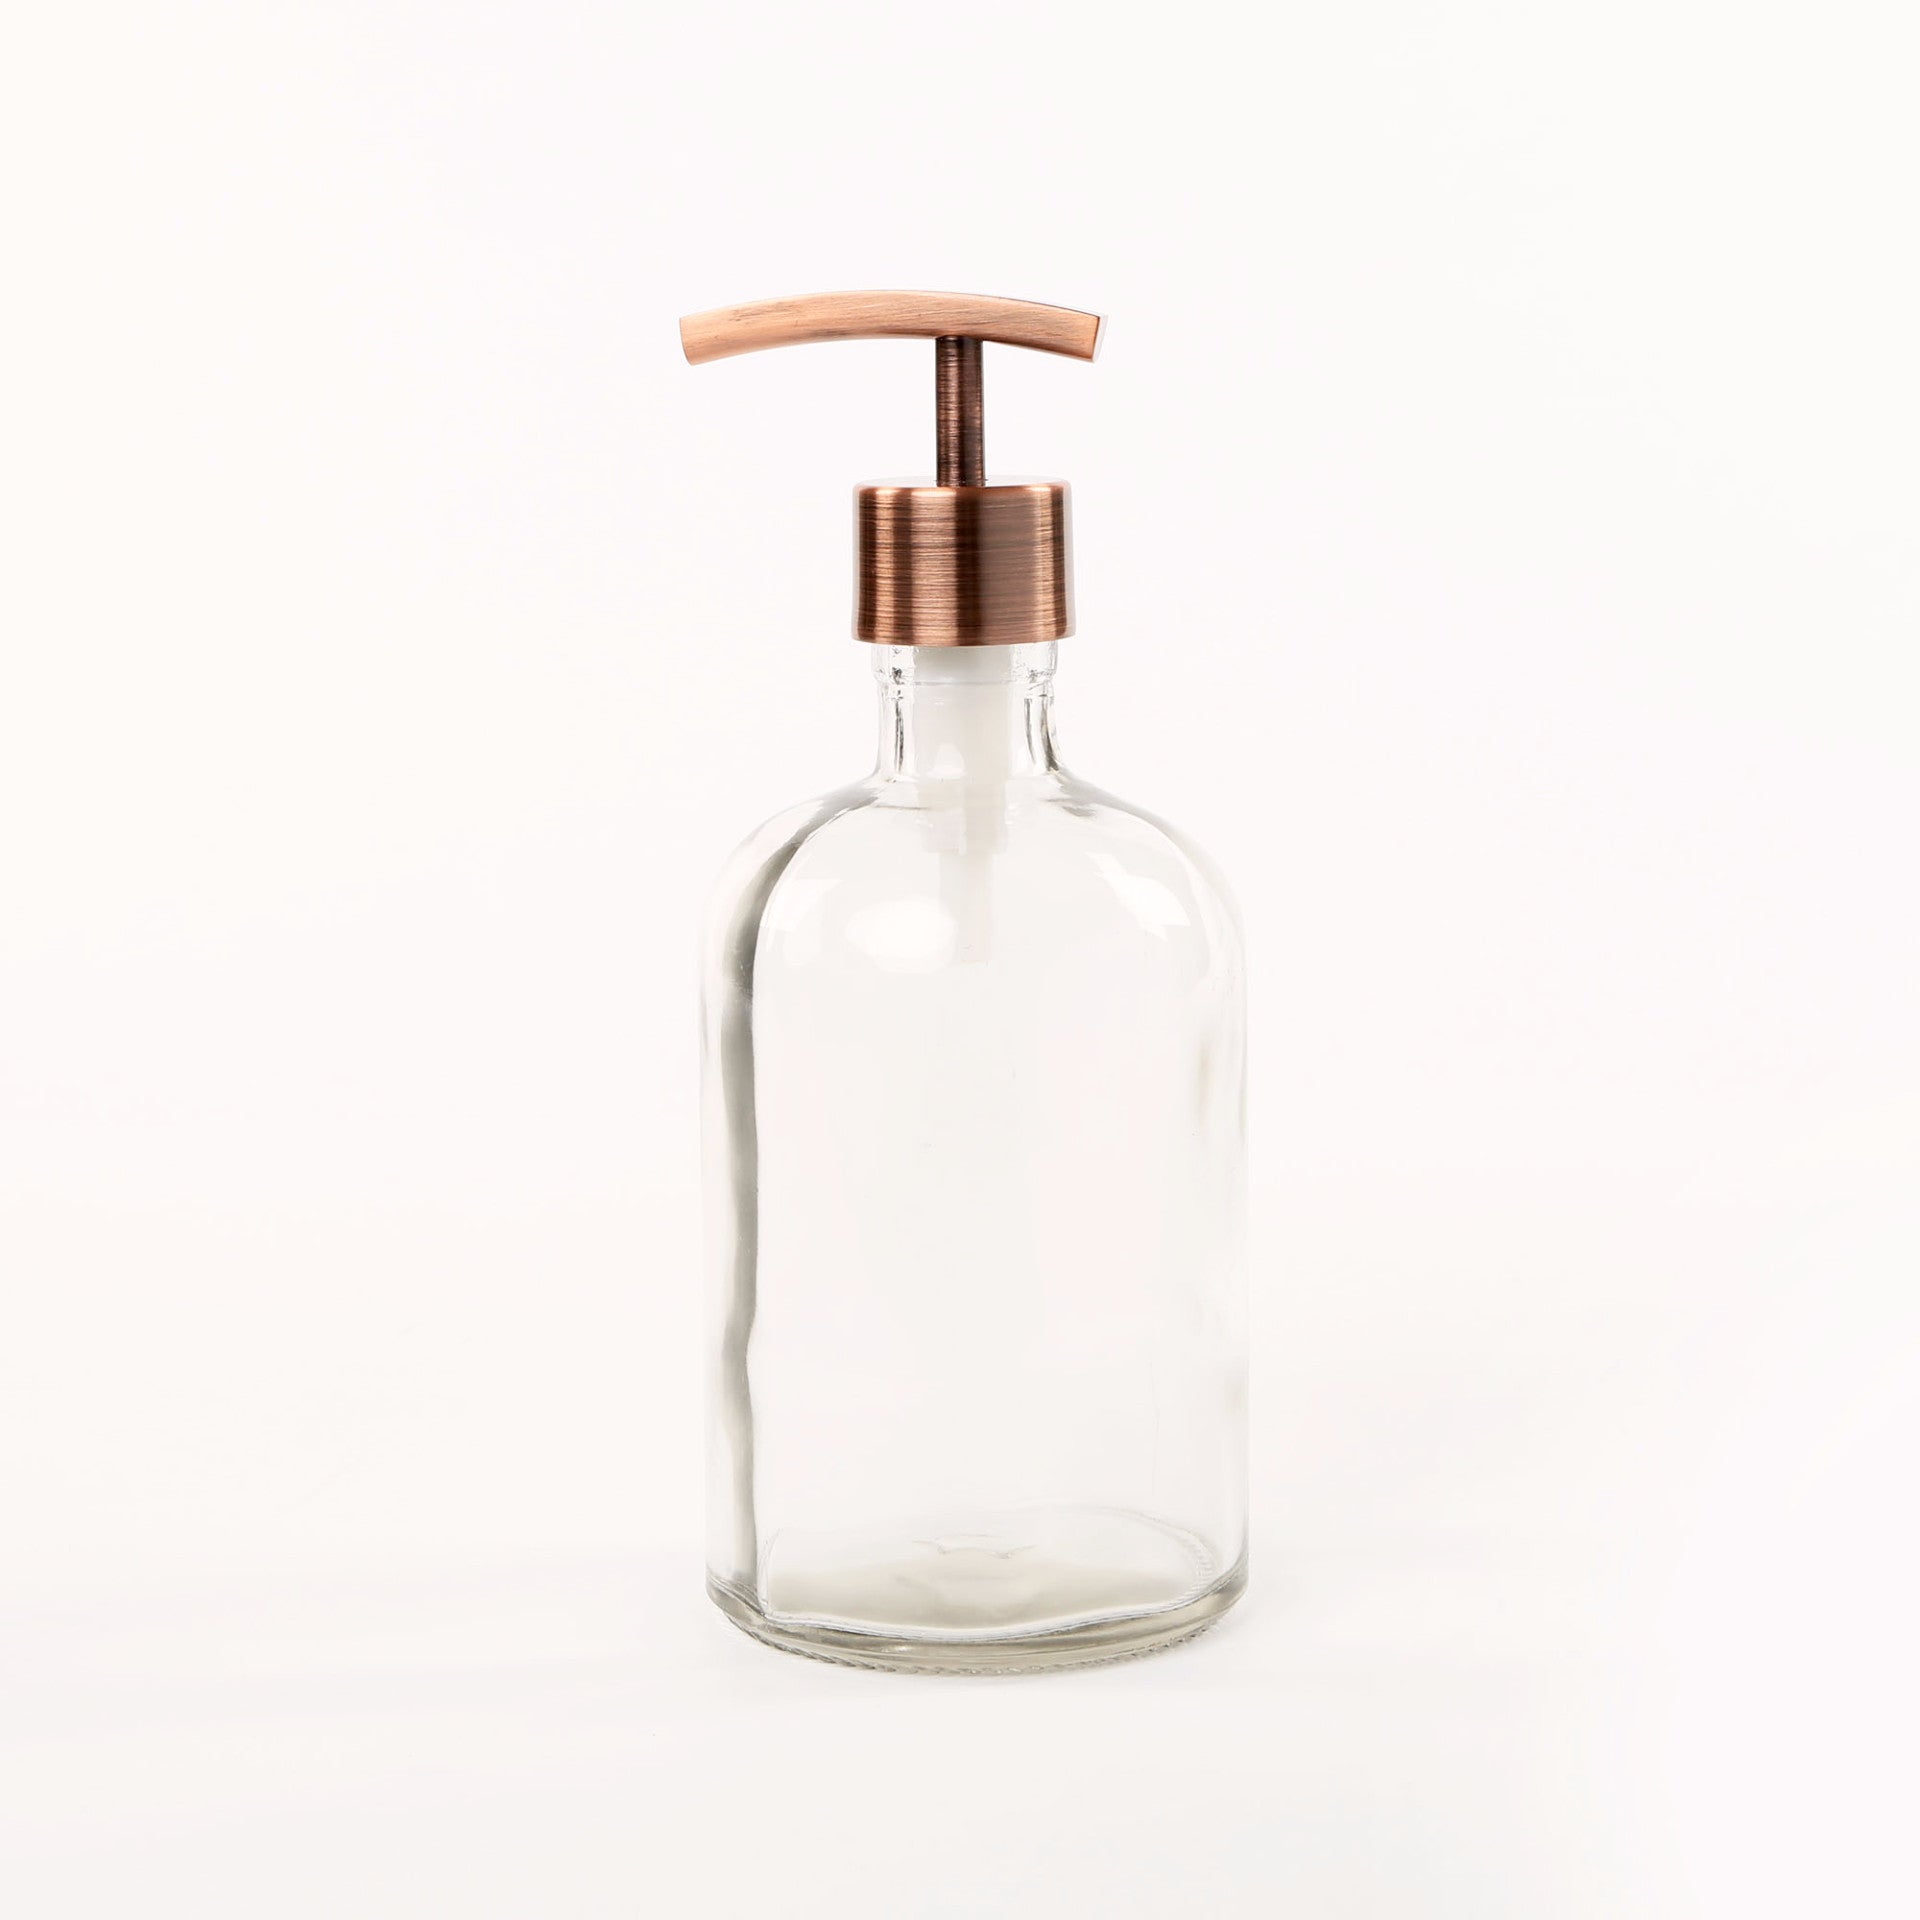 copper soap dispenser for kitchen sink